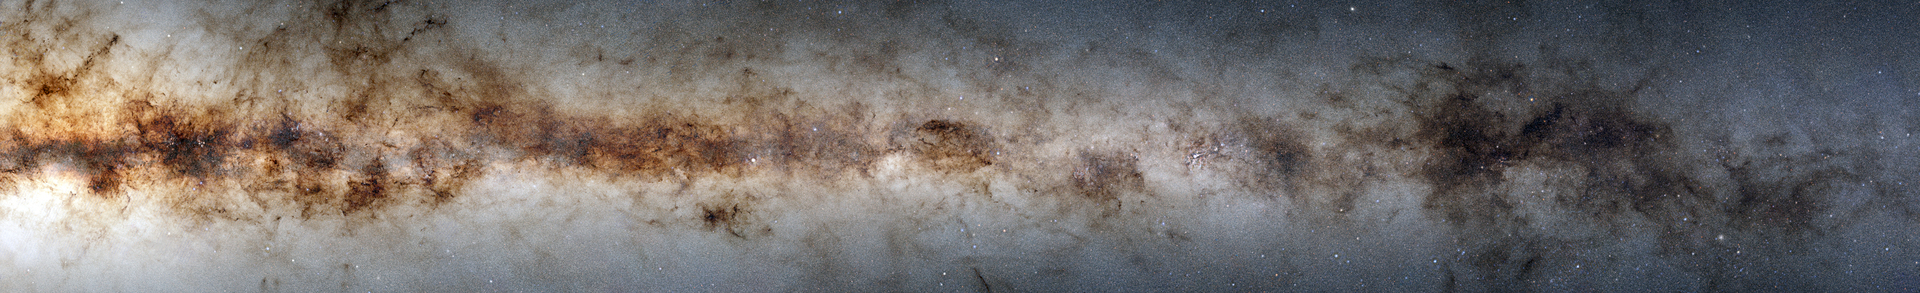 جلسة تصوير للمجرات تلتقط 3 مليارات جرم سماوي (صورة)